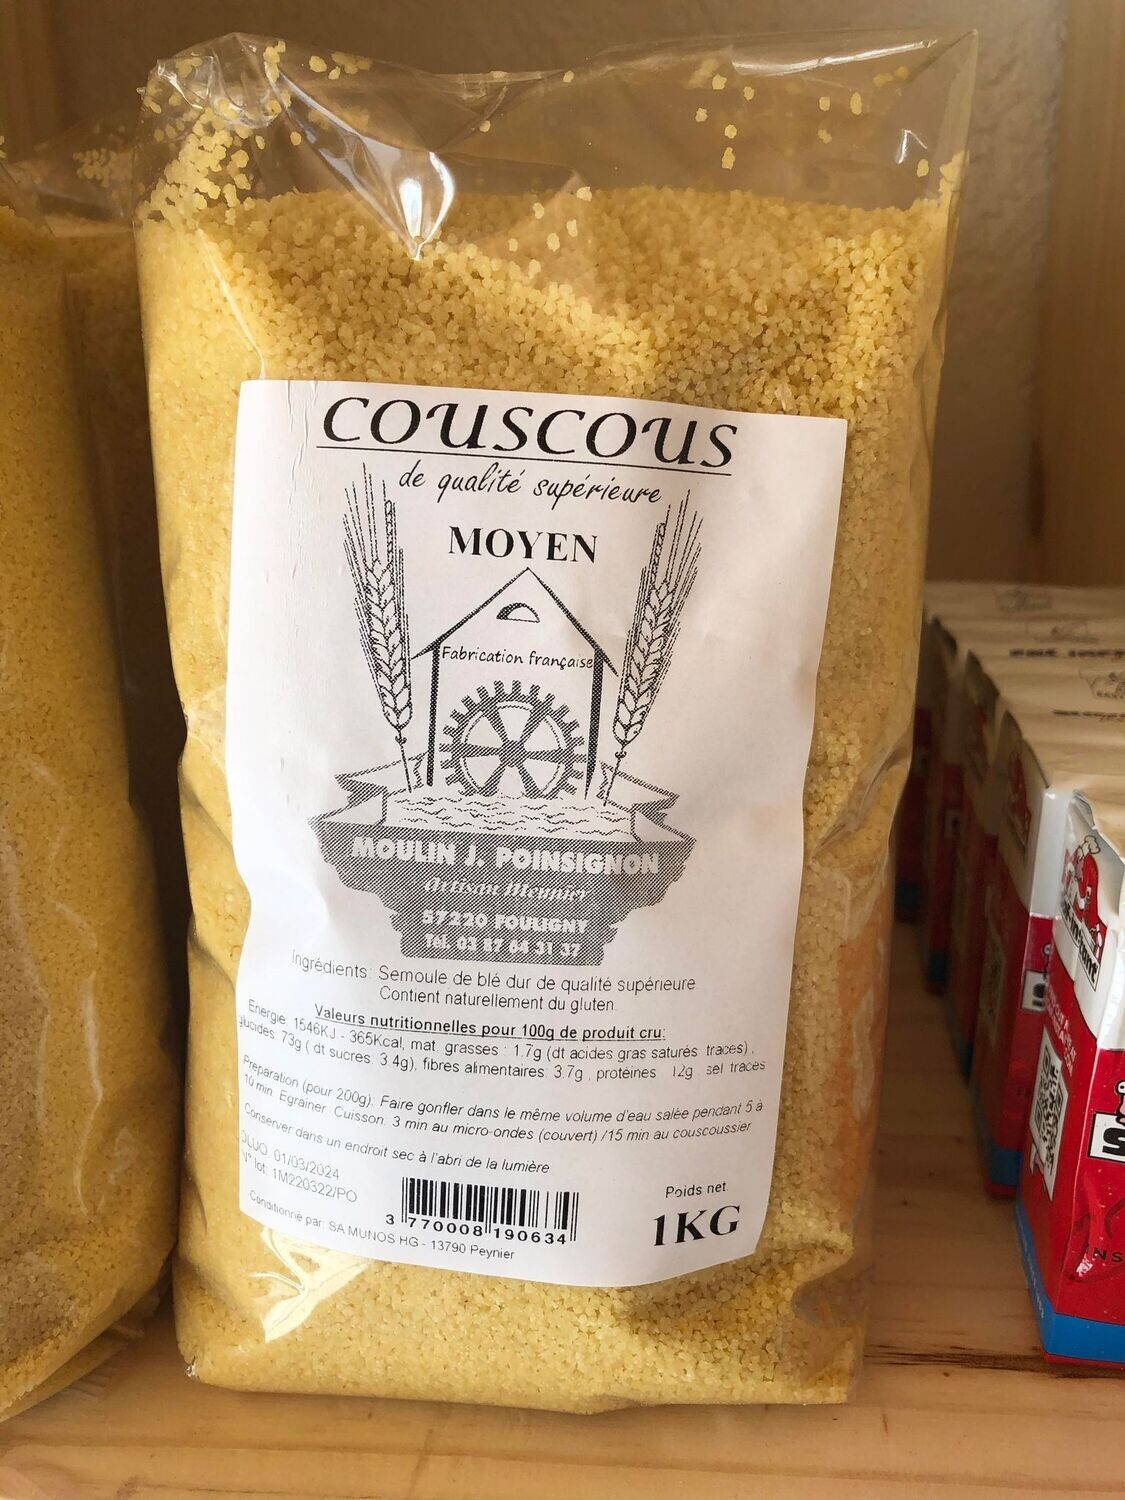 Semoule de blé grain moyen, sac de 1 kg